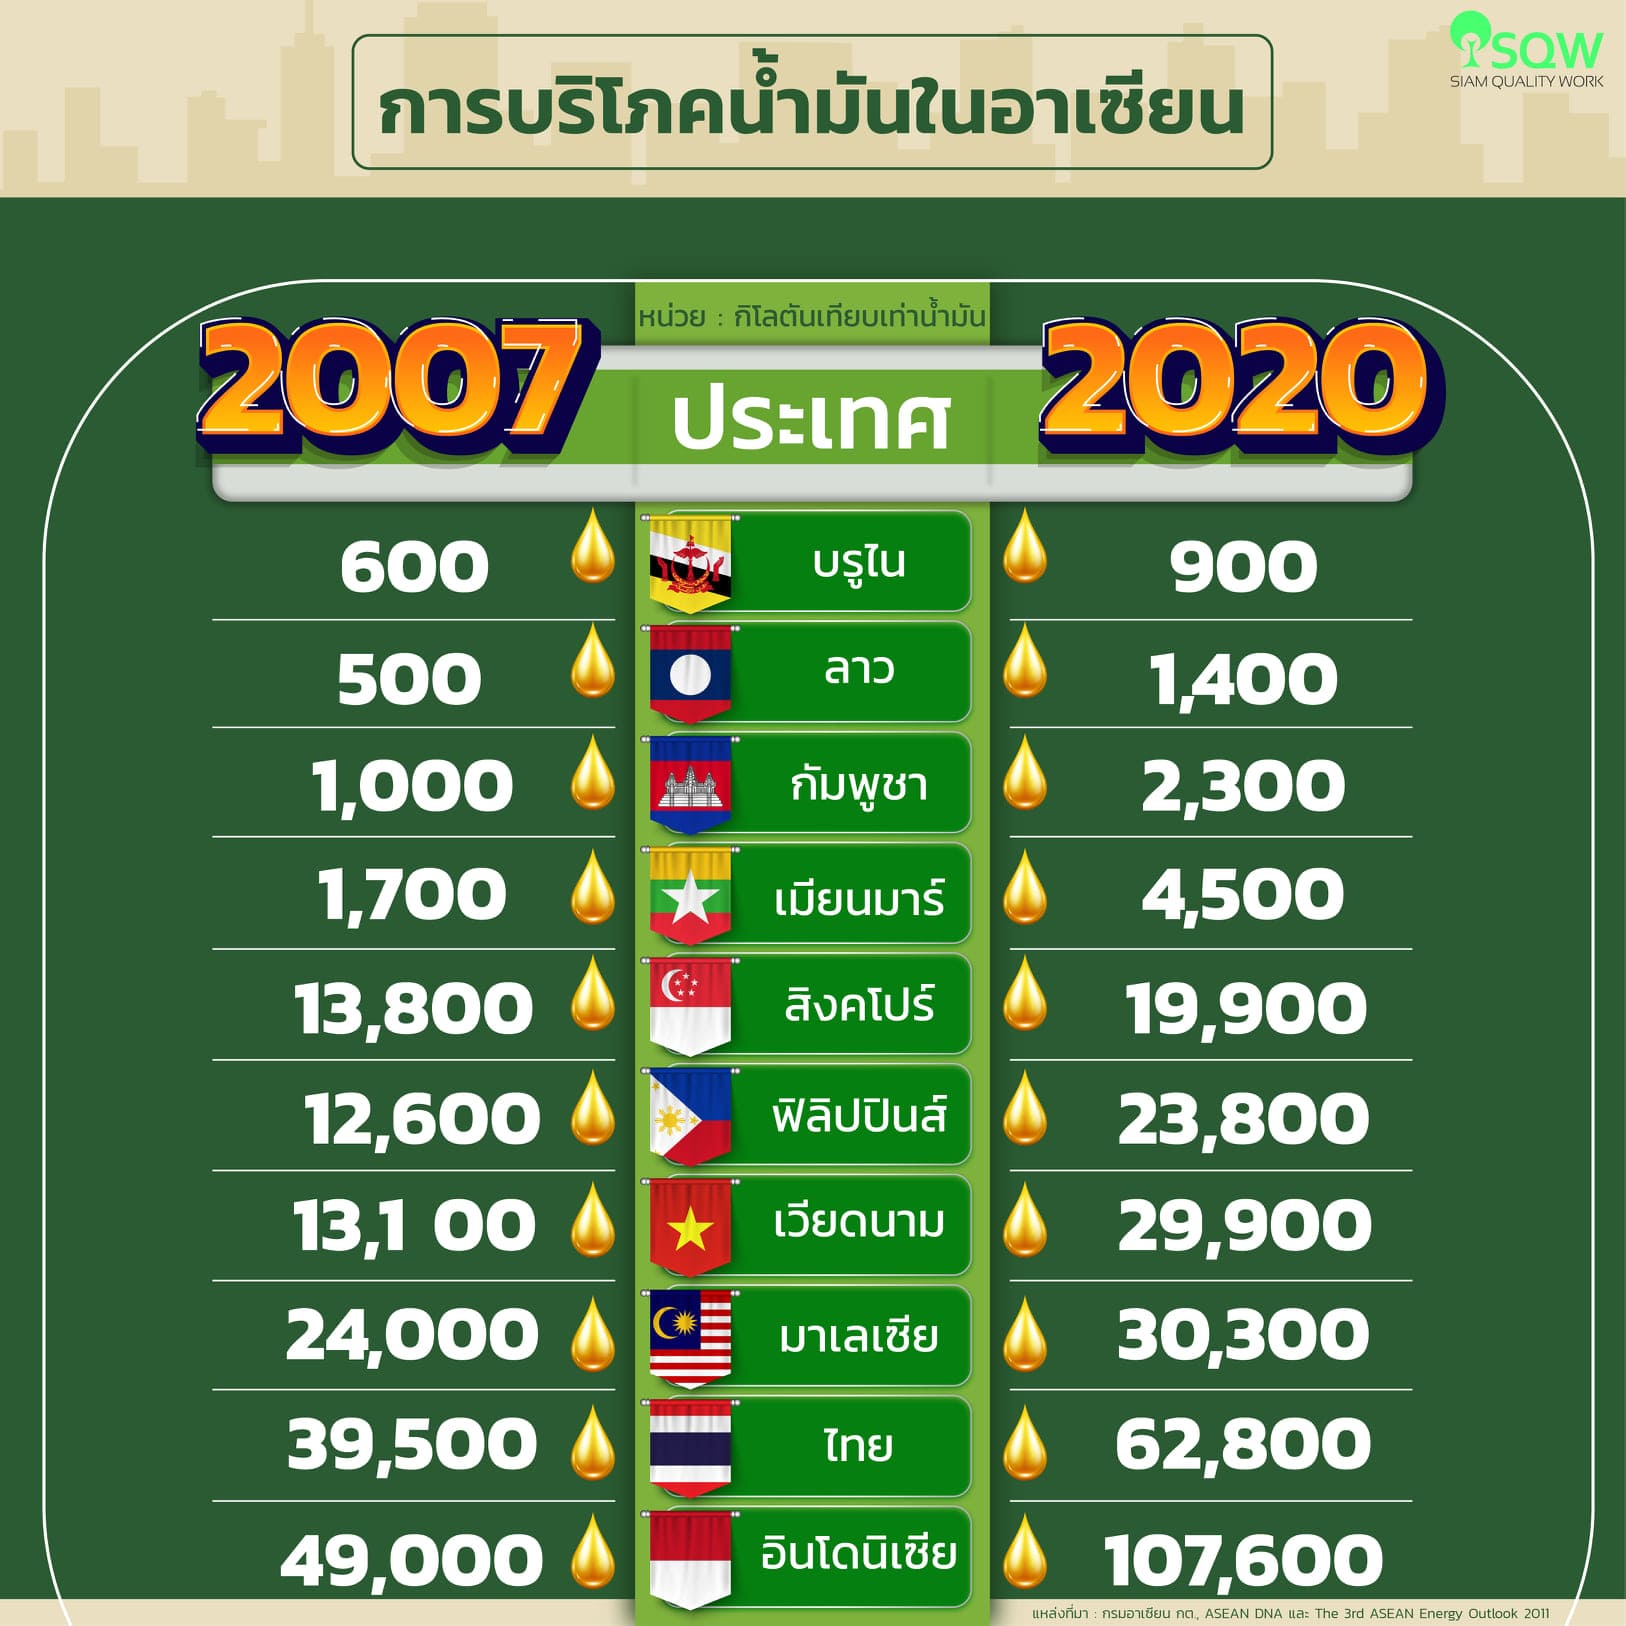 การบริโภคน้ำมันในอาเซียน ปี 2007 กับ ปี 2020